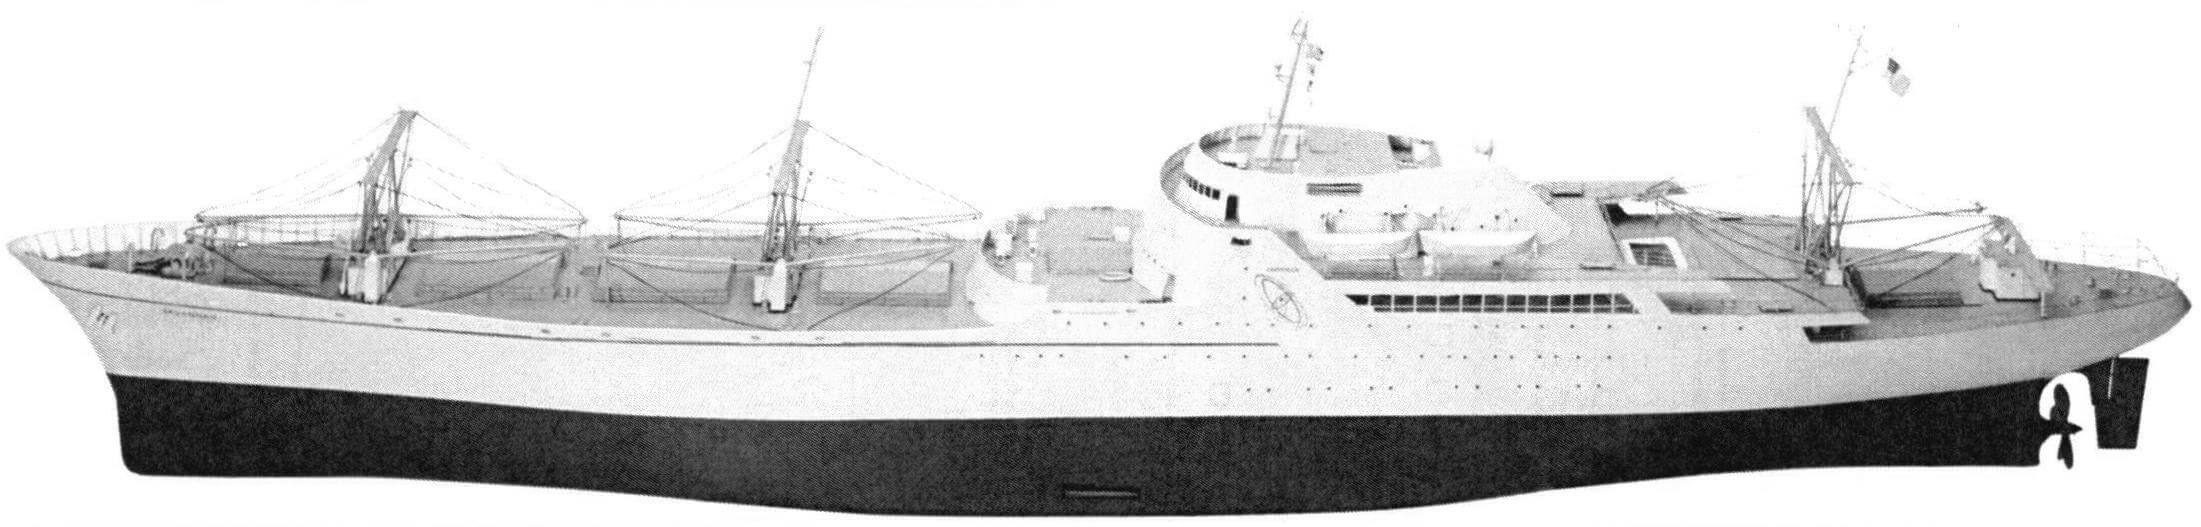 Построенное по программе «Мирный атом» грузопассажирское судно «Саванна» (вид сбоку и модель)